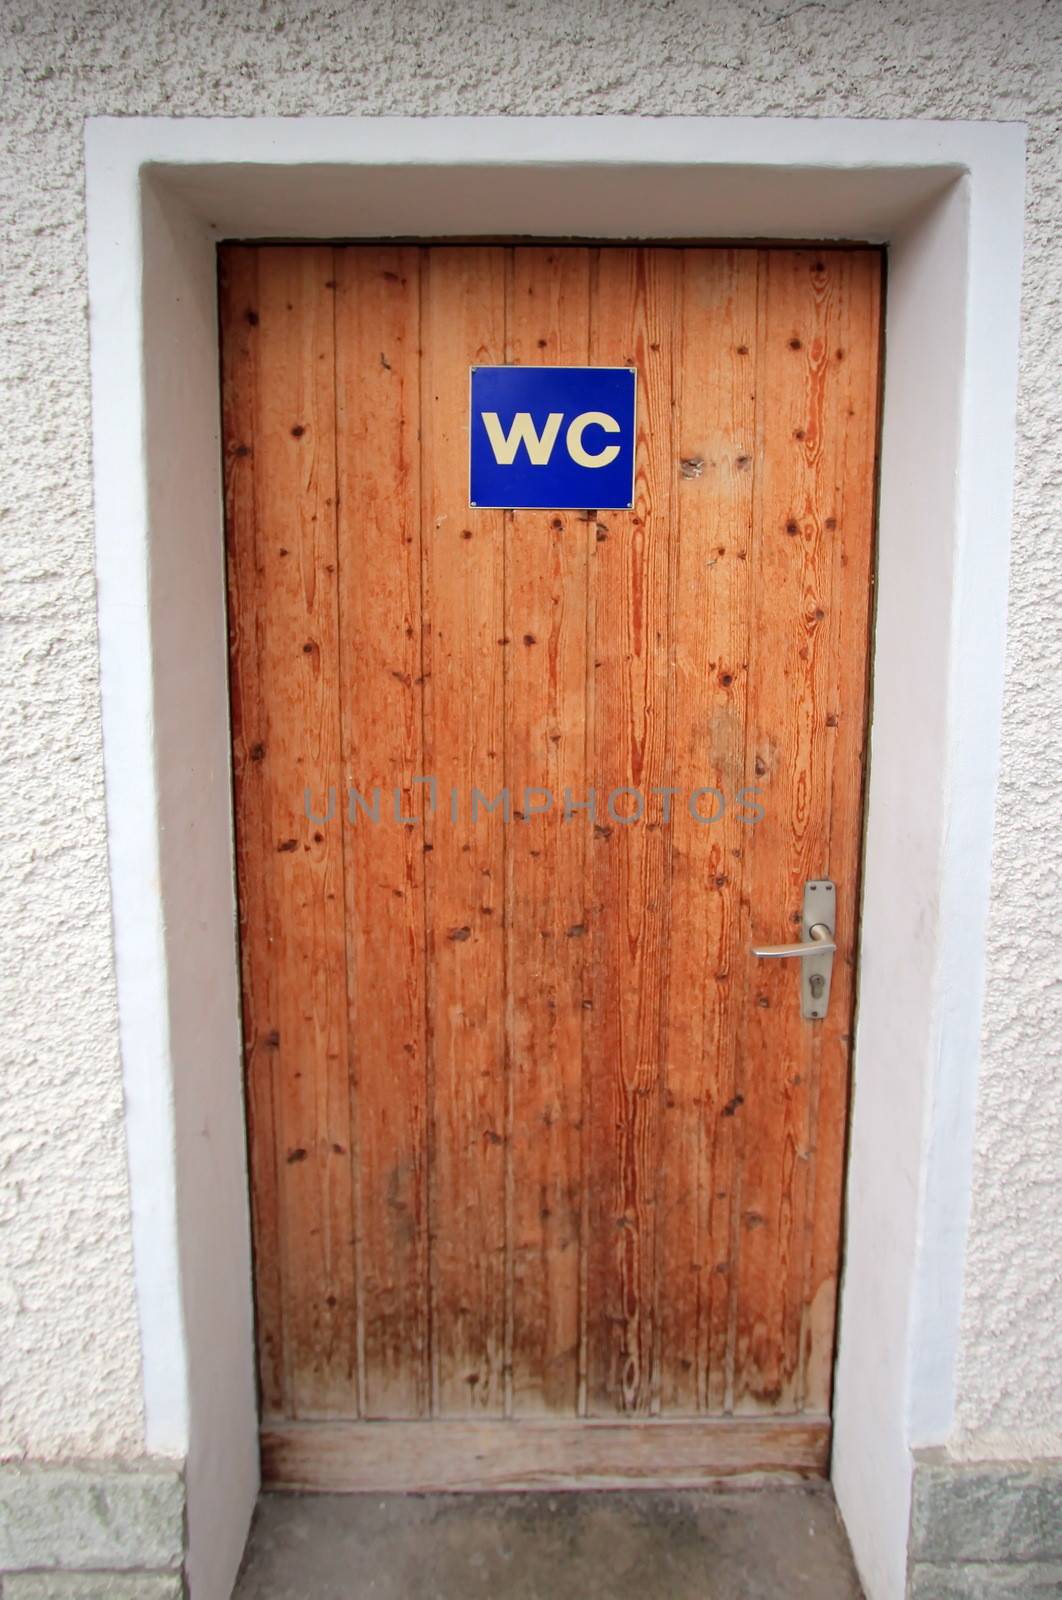 WC door by Elenaphotos21